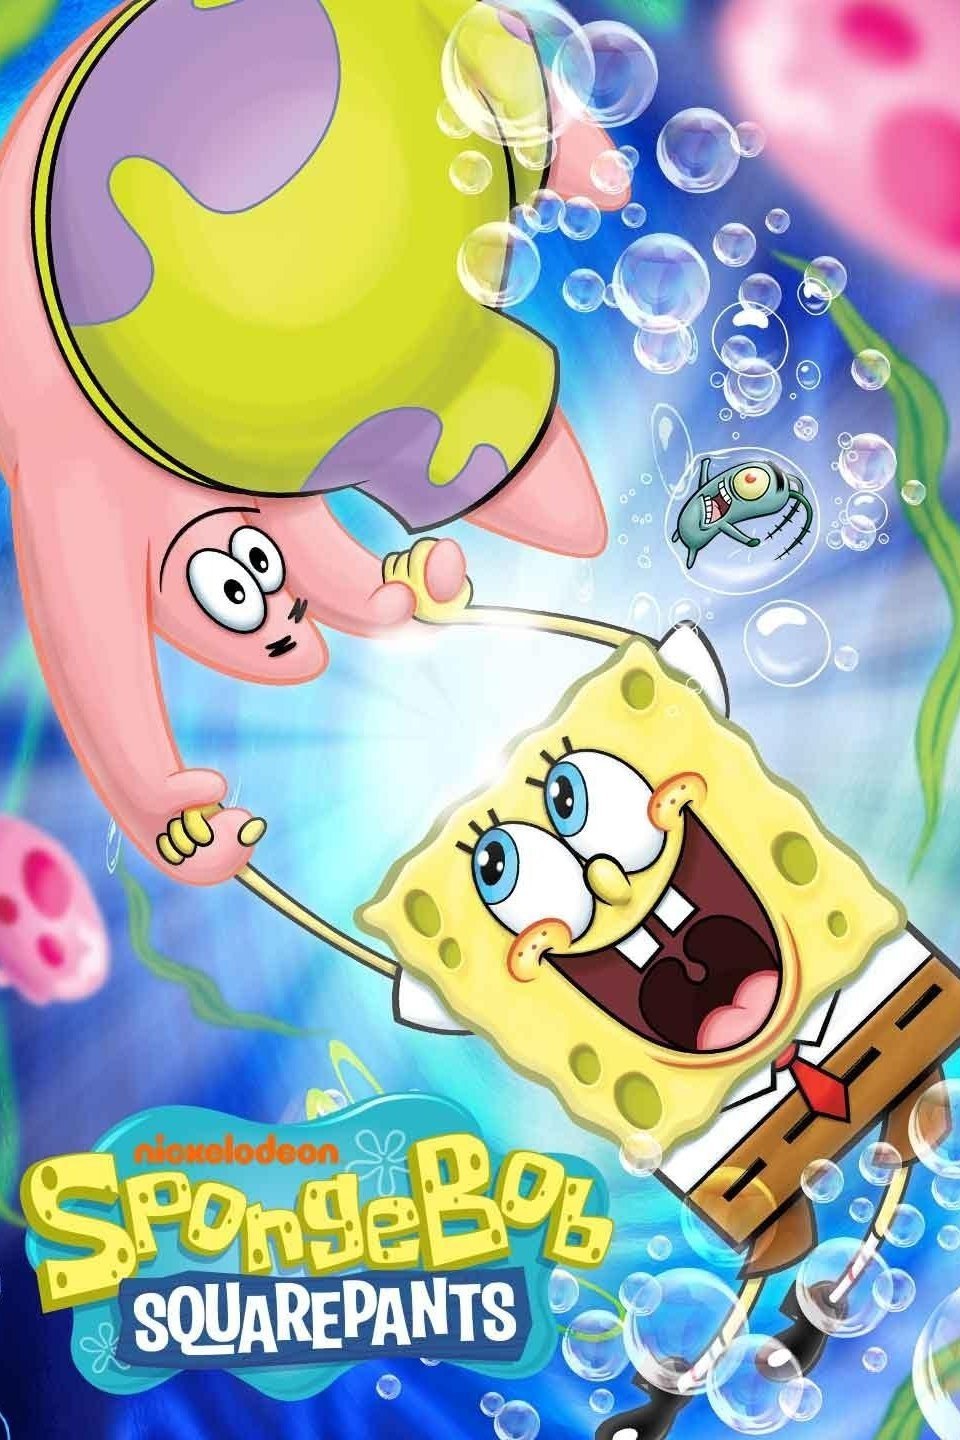 is spongebob gay 2021